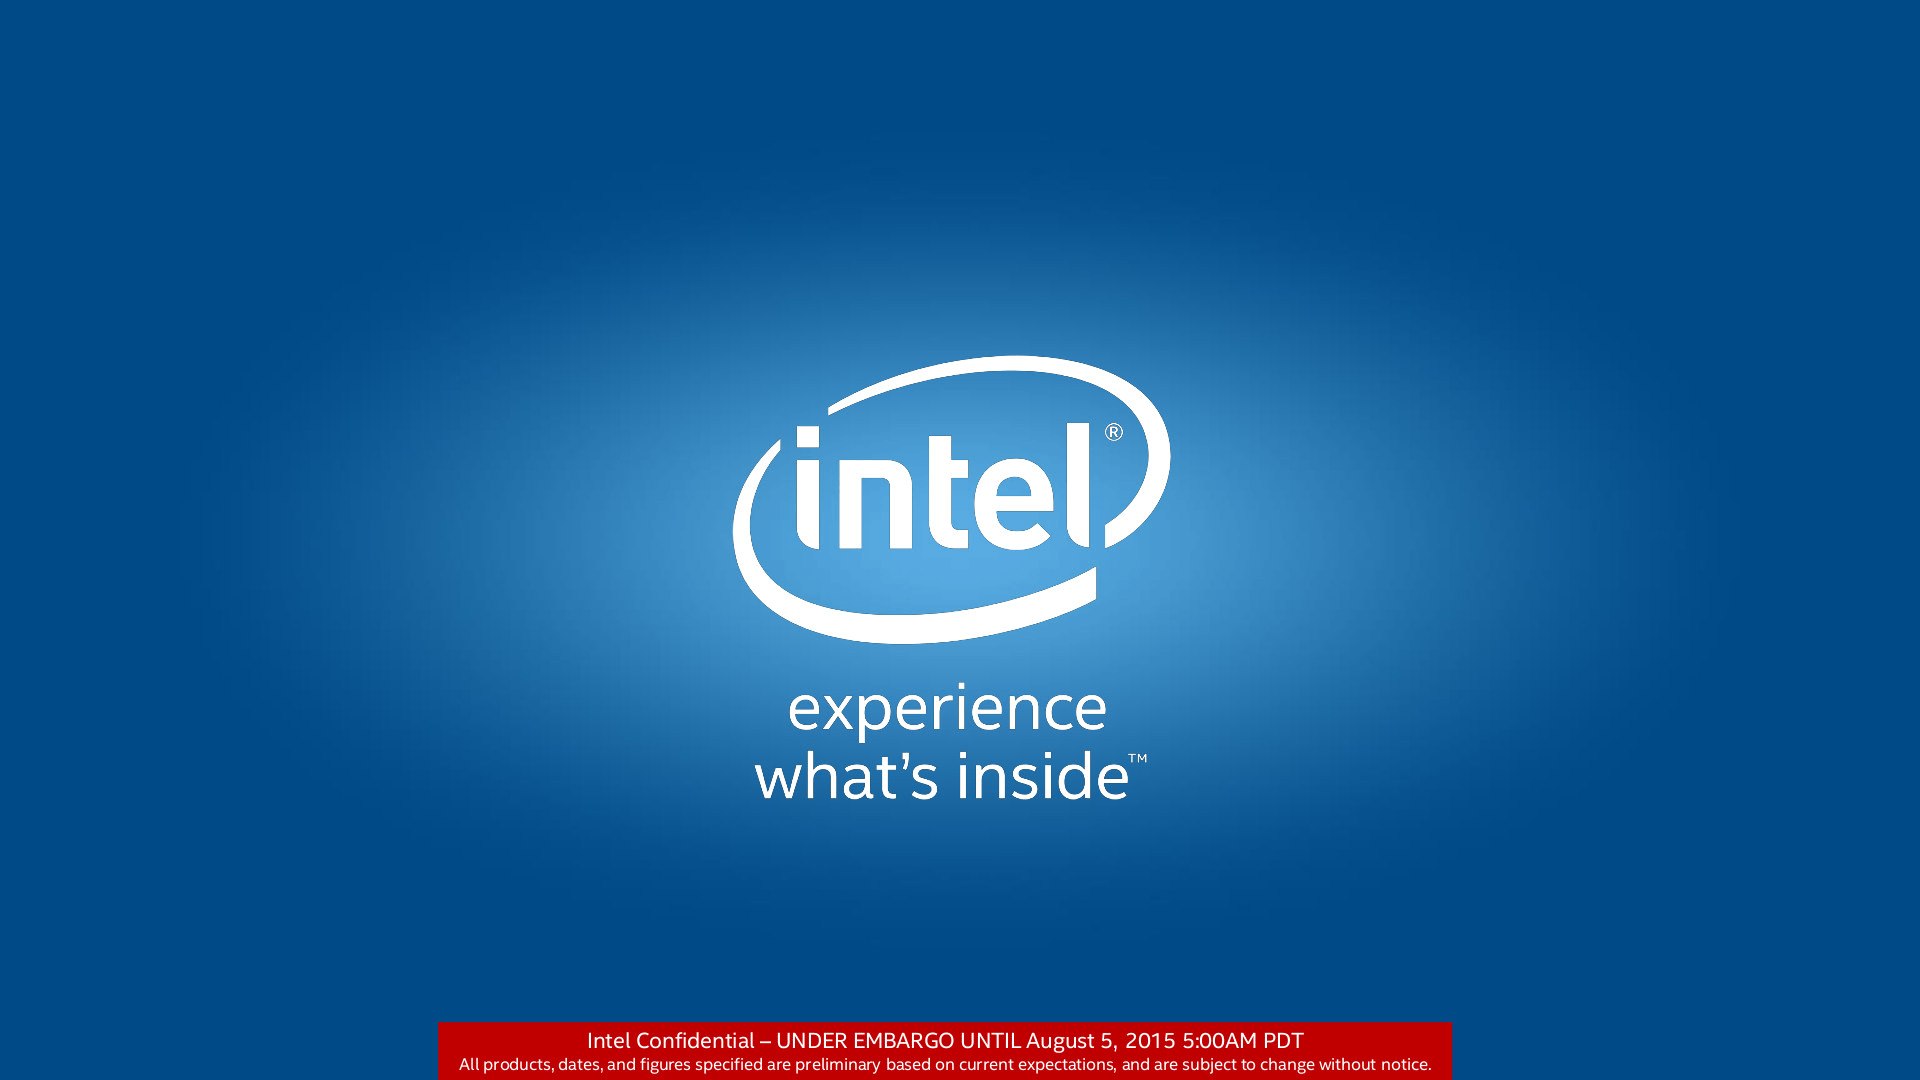 Επίσημη παρουσίαση των Intel Skylake στην Gamescom